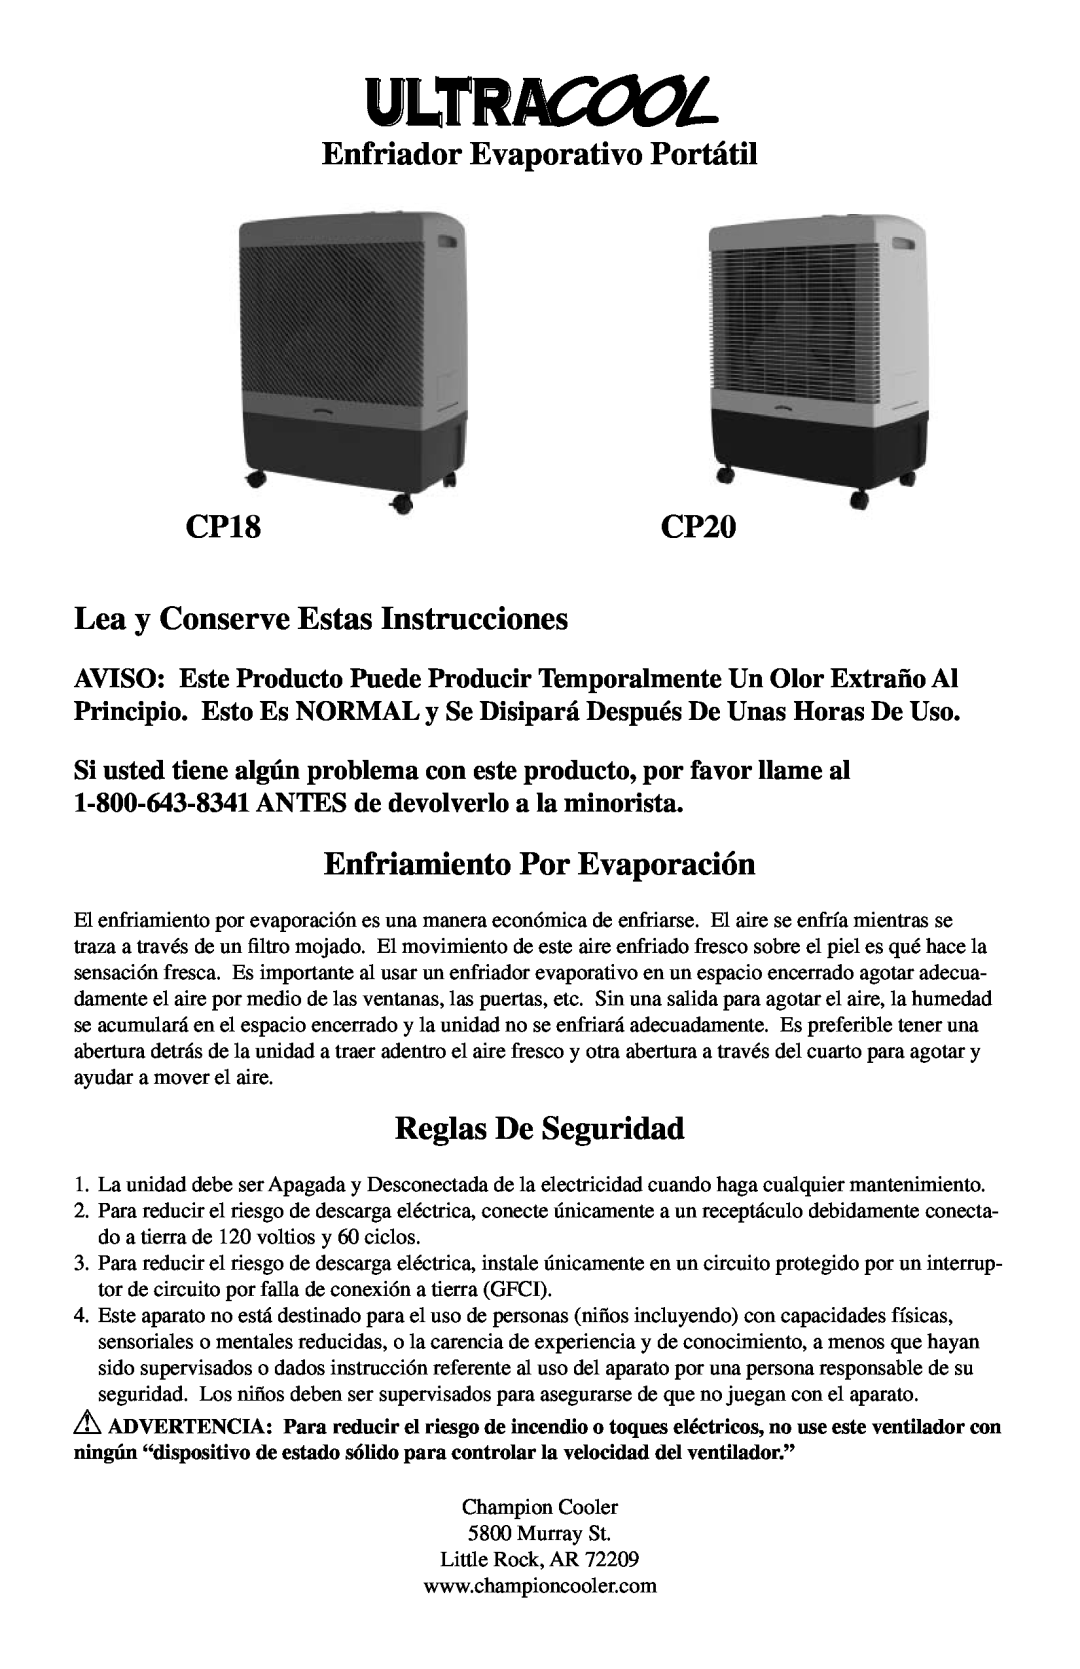 Essick Air Enfriador Evaporativo Portátil CP18CP20, Lea y Conserve Estas Instrucciones, Enfriamiento Por Evaporación 